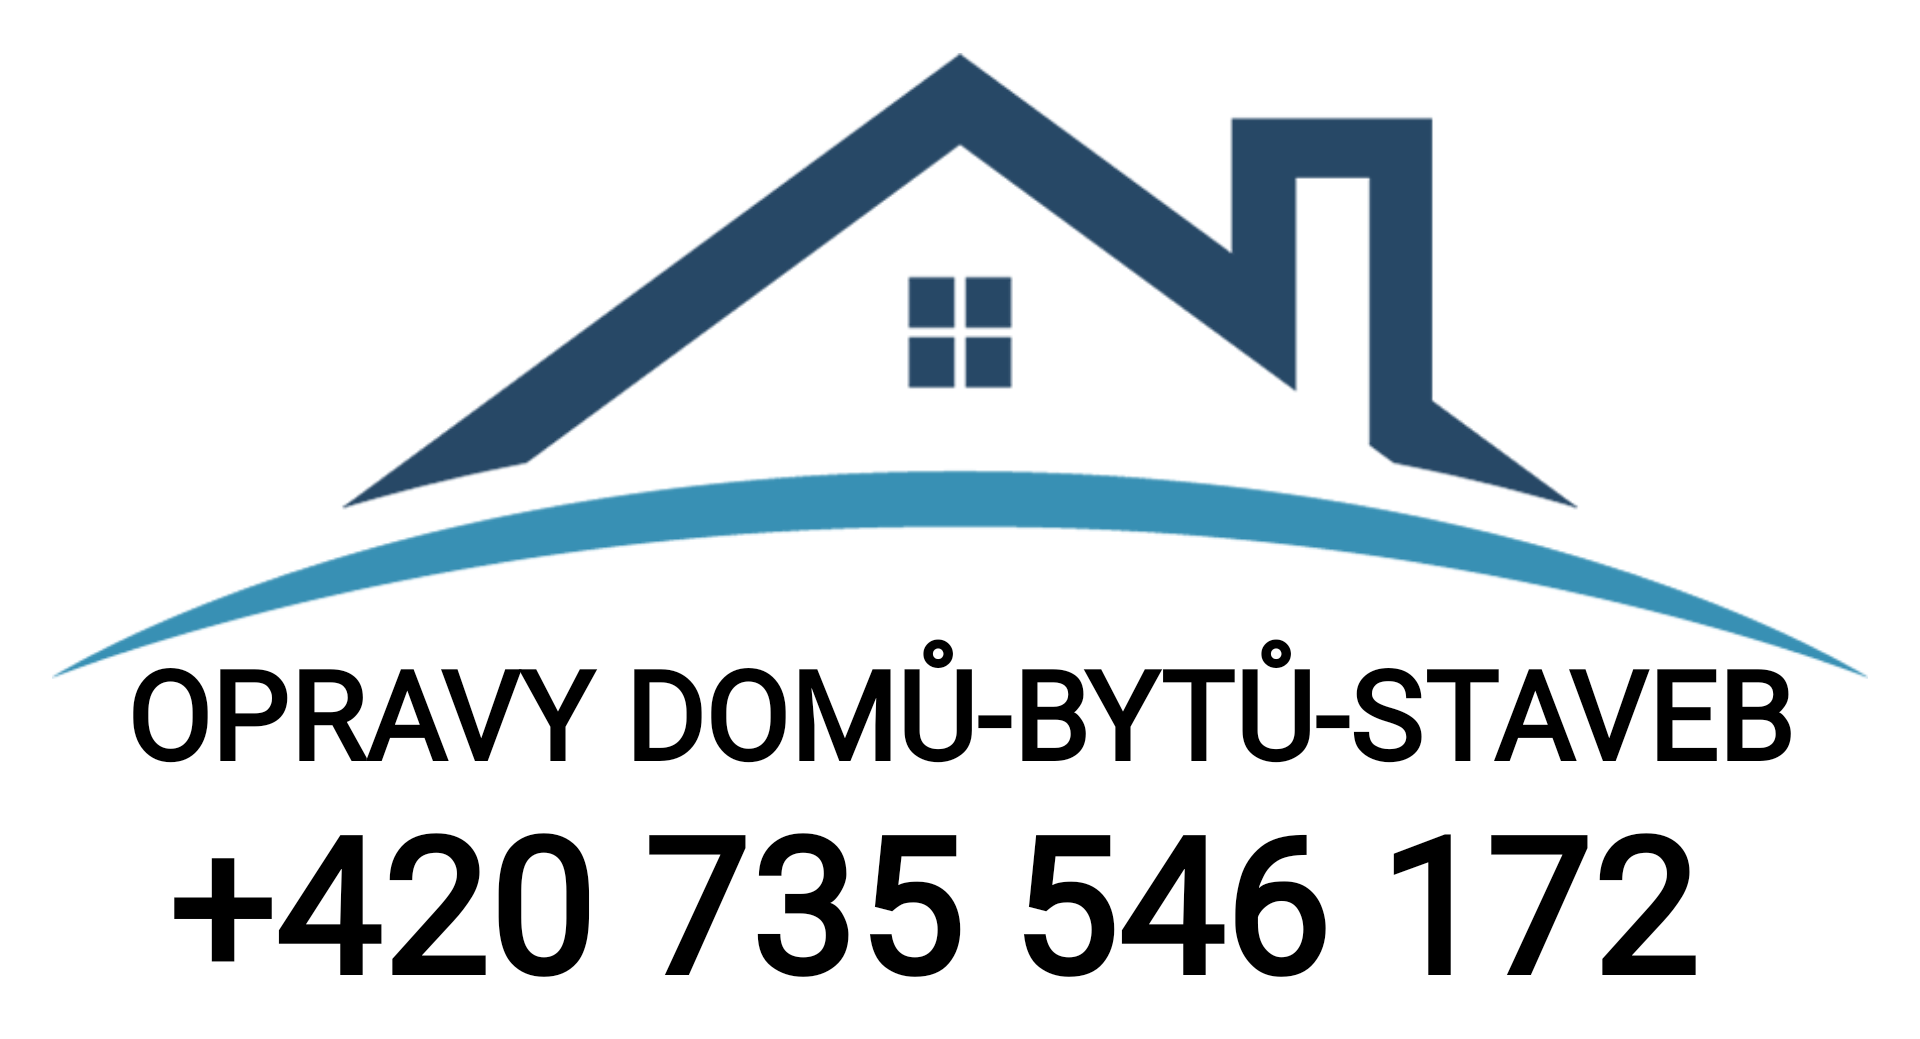 Opravy domů, bytů a ostatních staveb pro Krnov, Opavu, Bruntál.